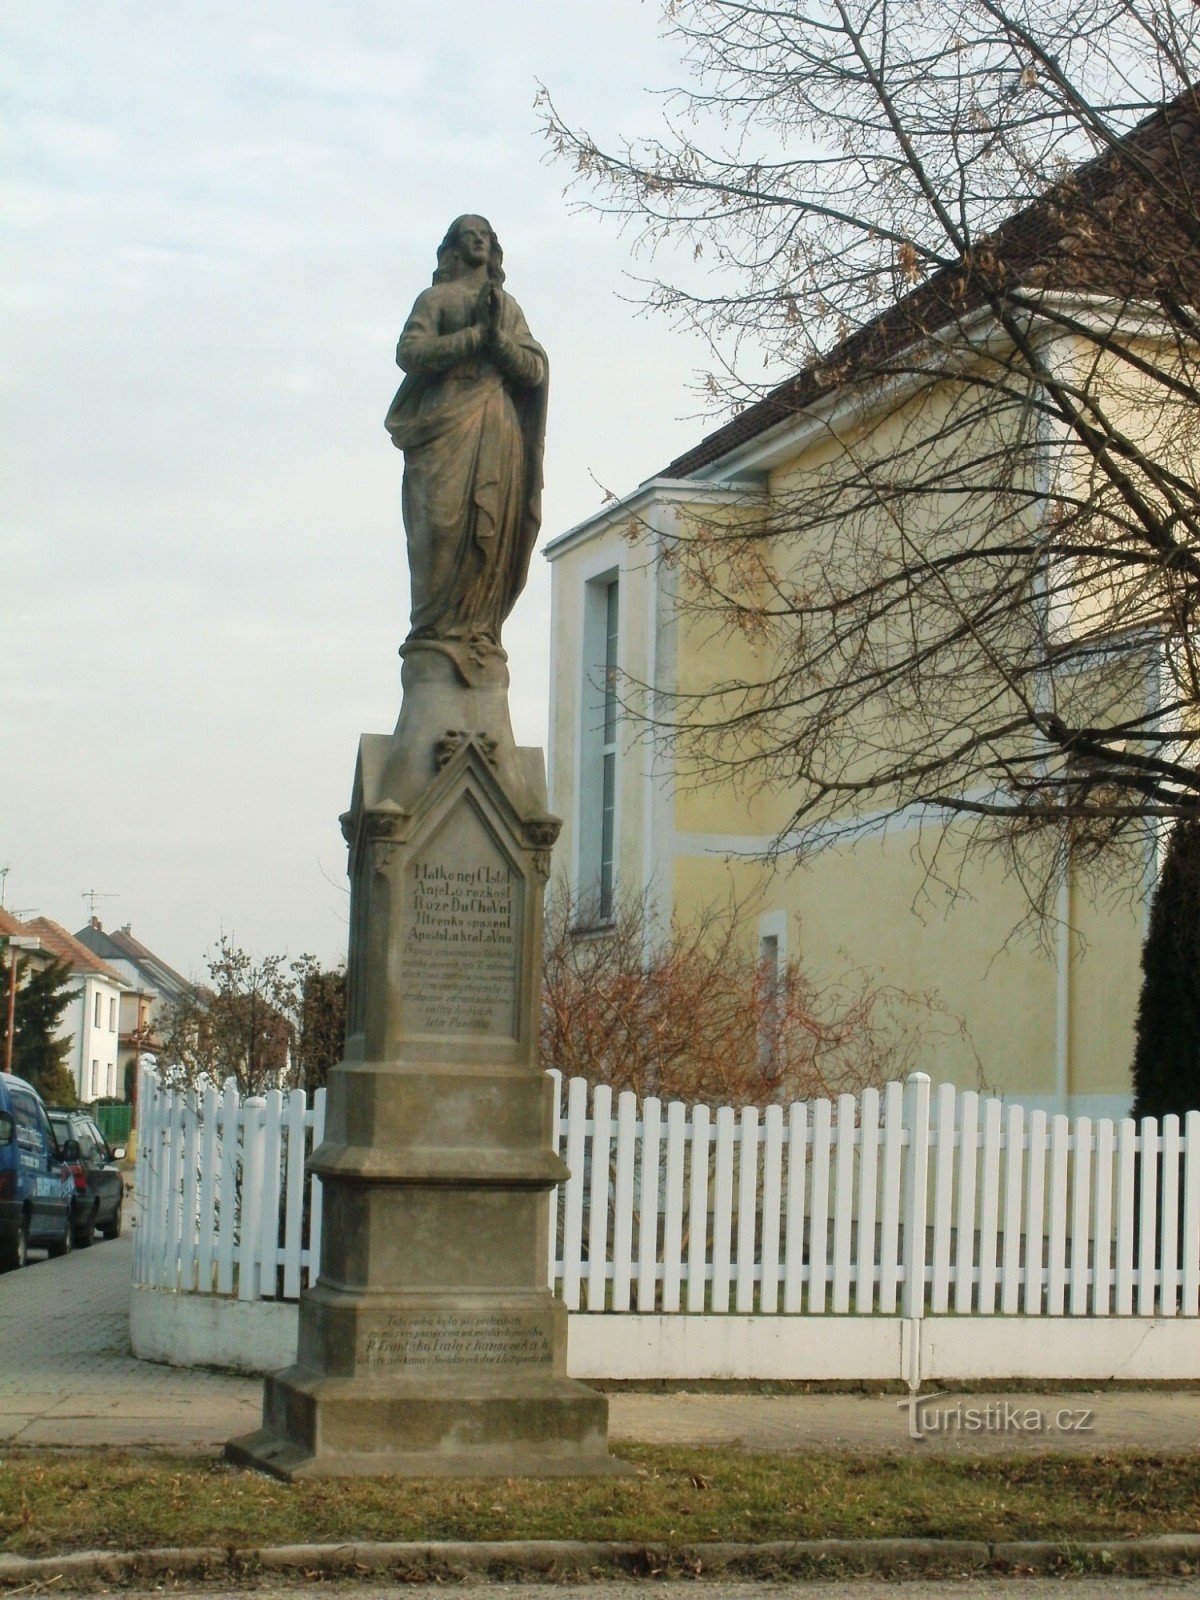 Nový Bydžov - spomenik s kipom sv. djevica Marija